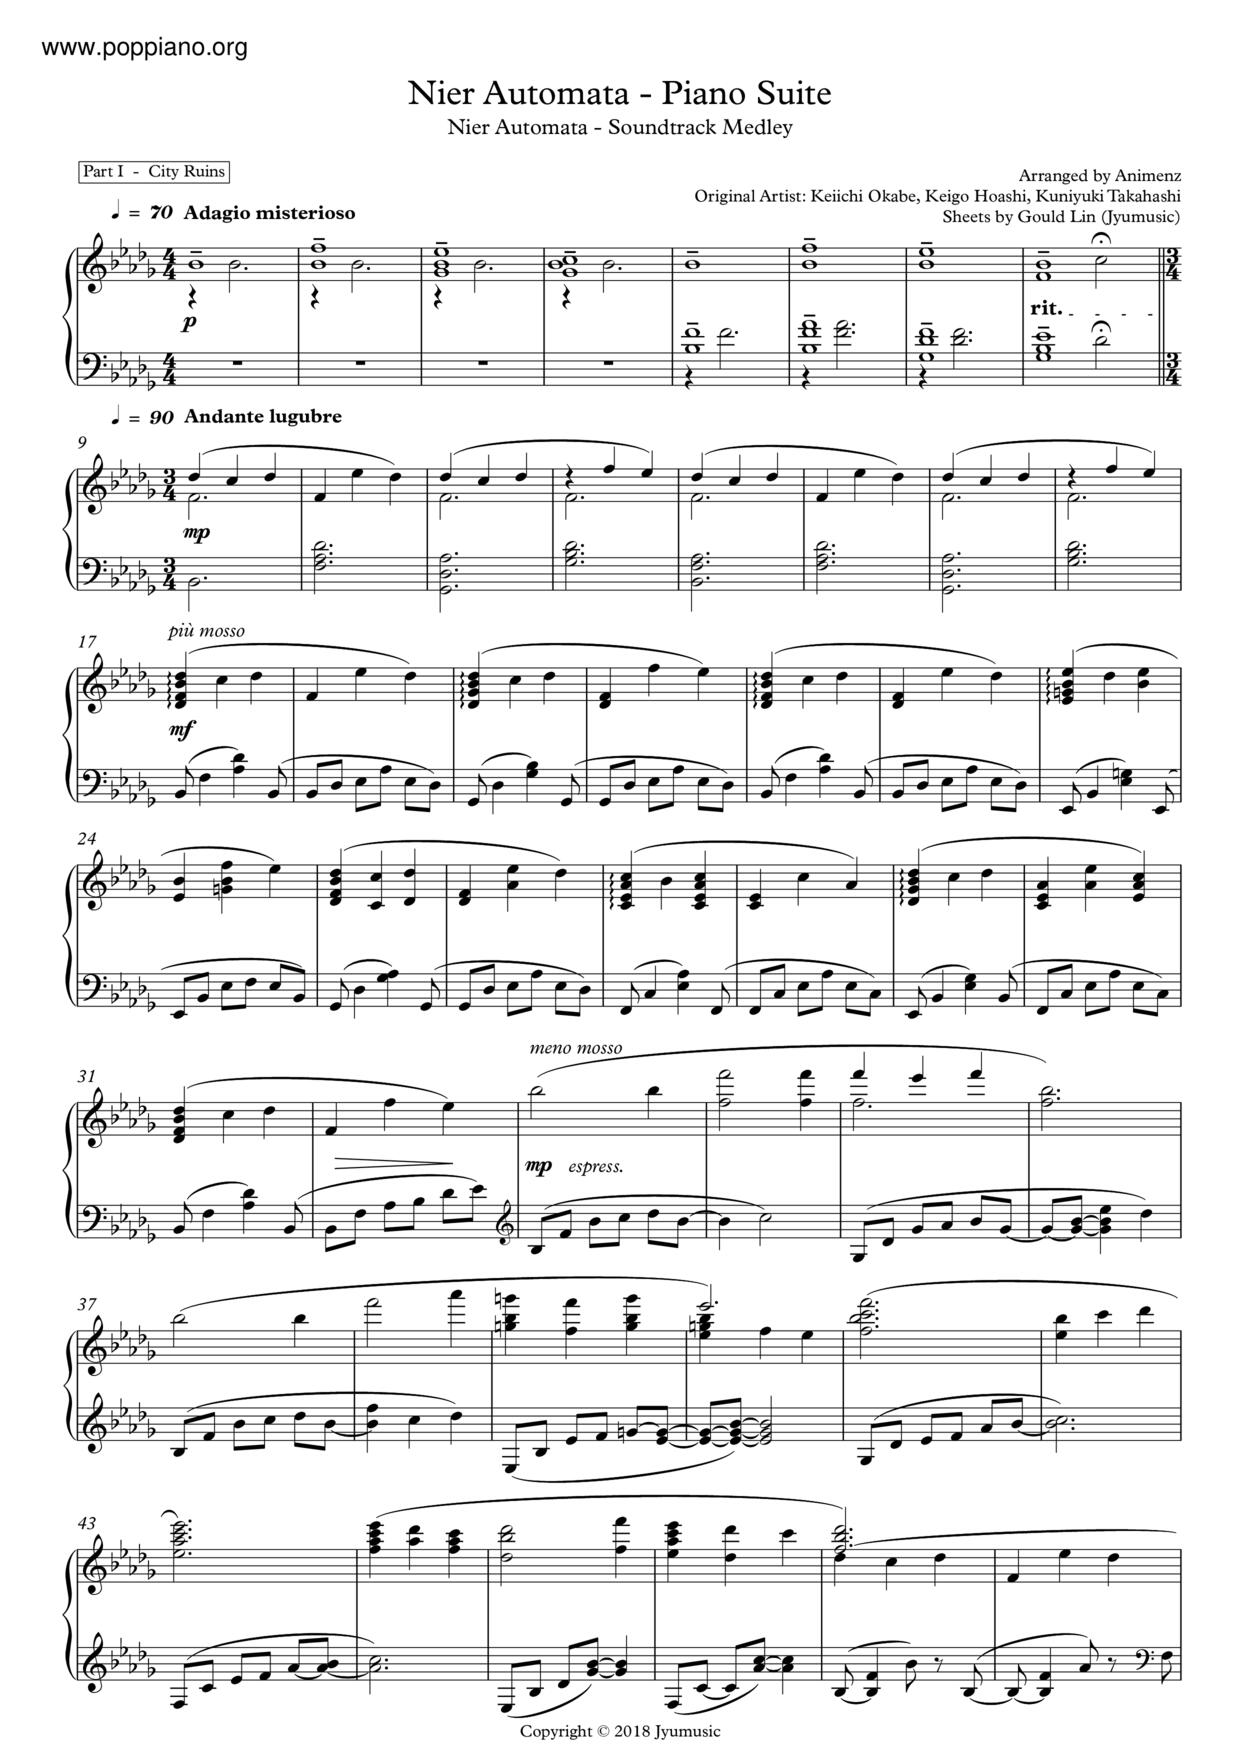 Nier Automata - Piano Suite Score